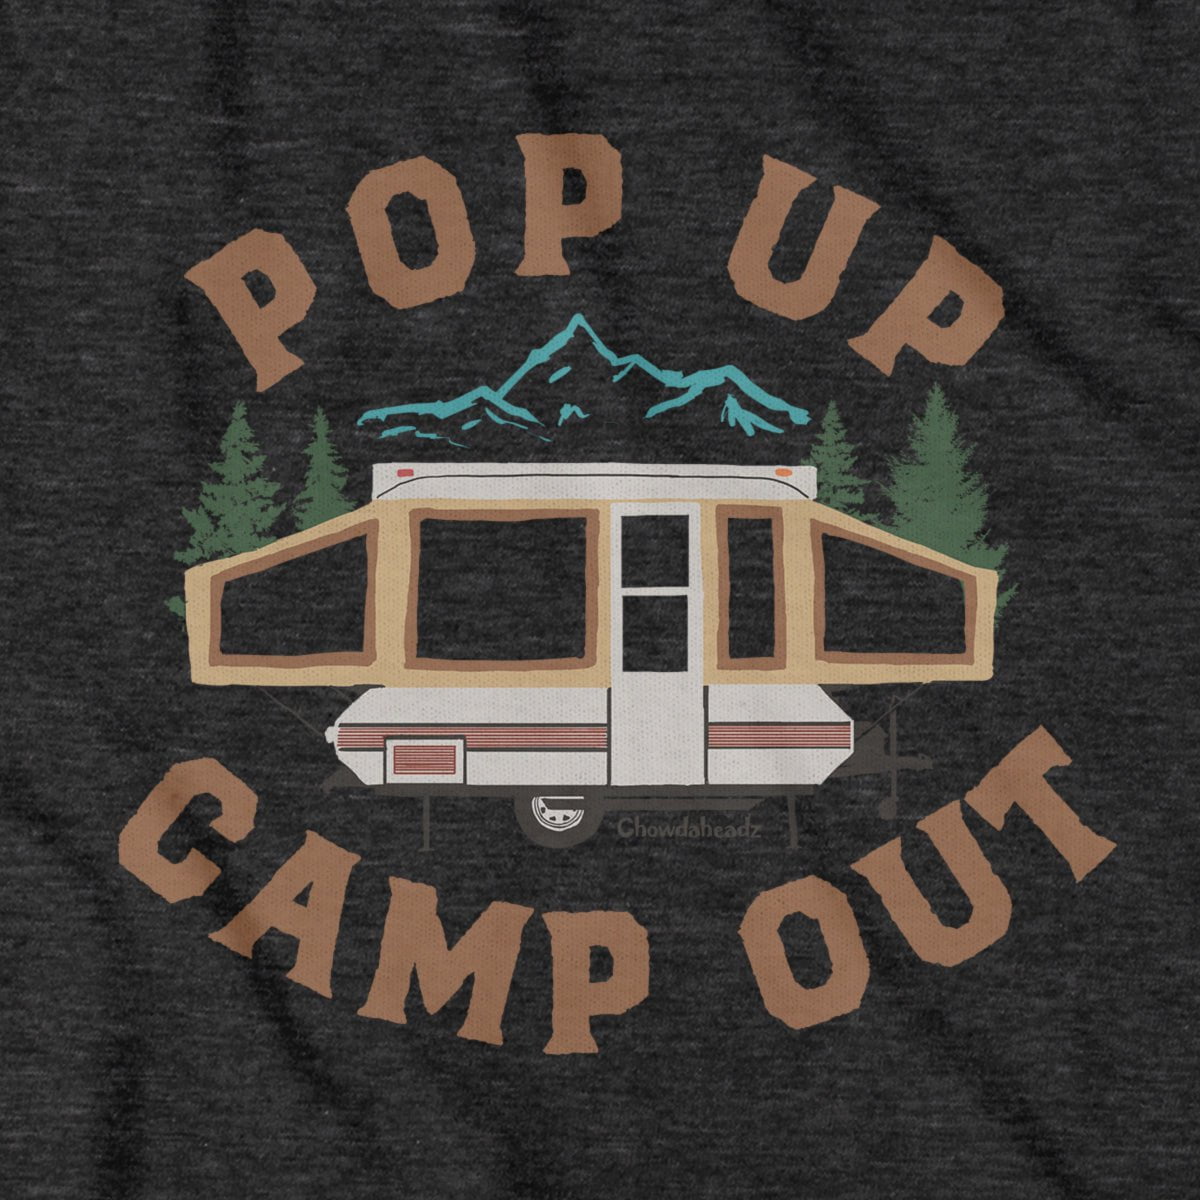 Pop Up Camp Out T-Shirt - Chowdaheadz